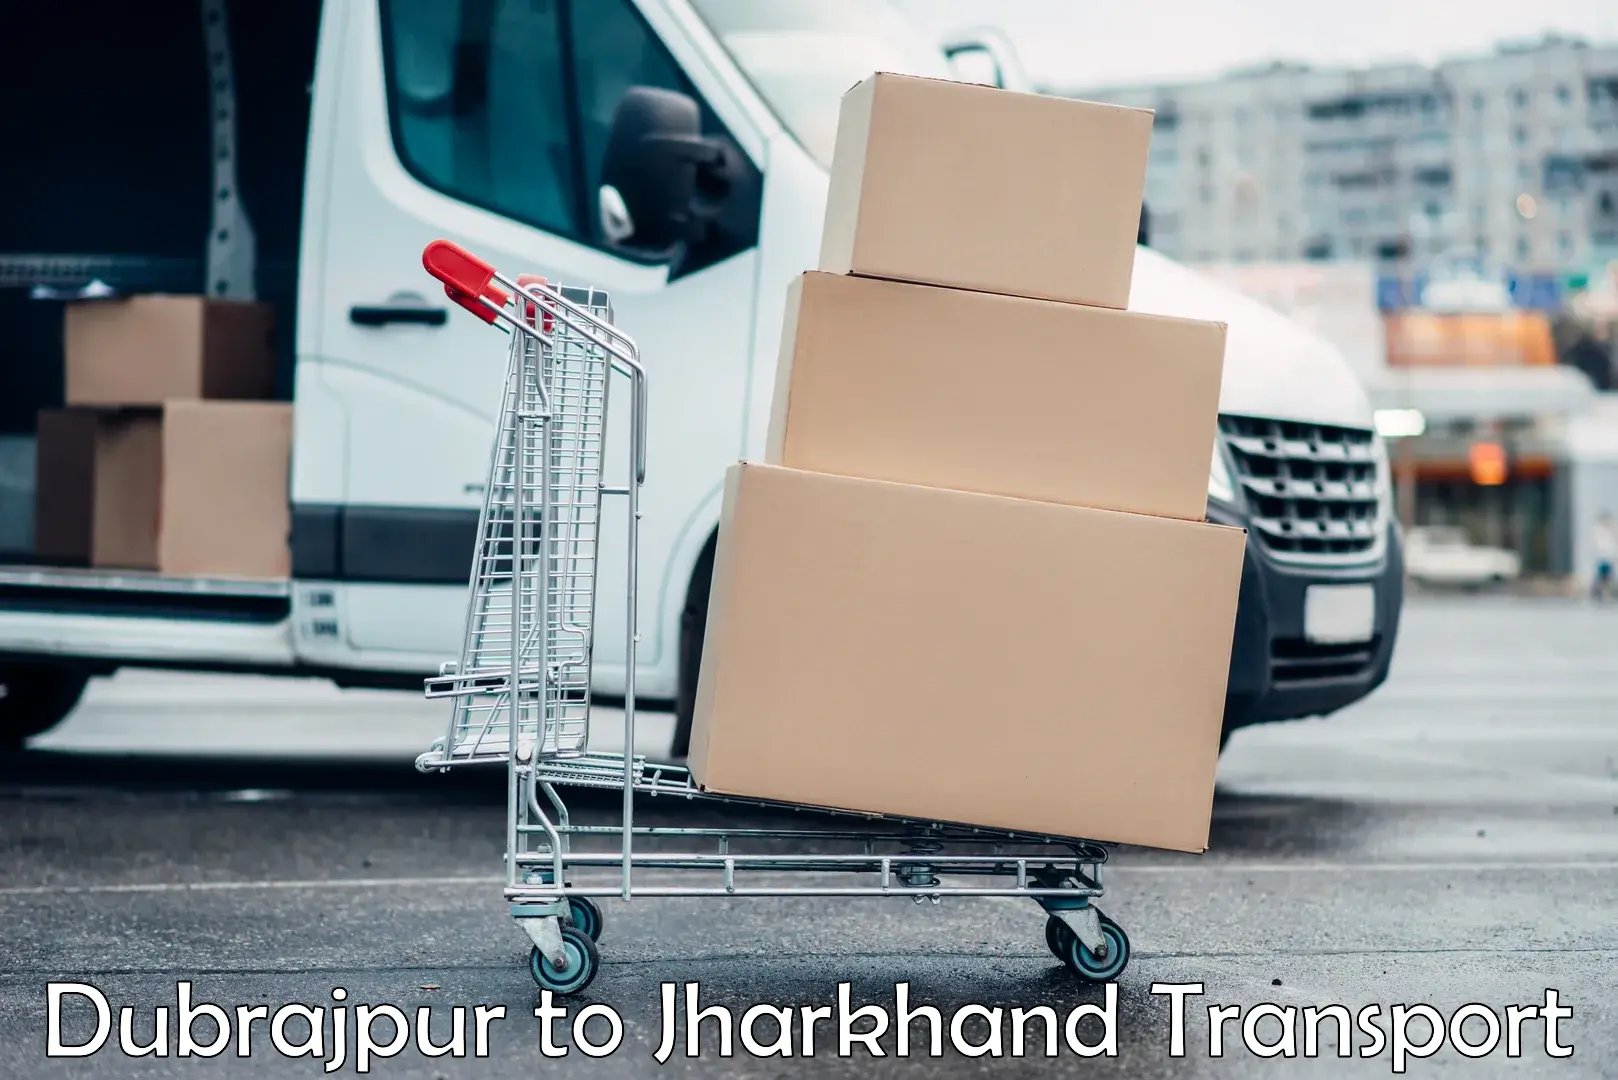 Daily parcel service transport Dubrajpur to Medininagar